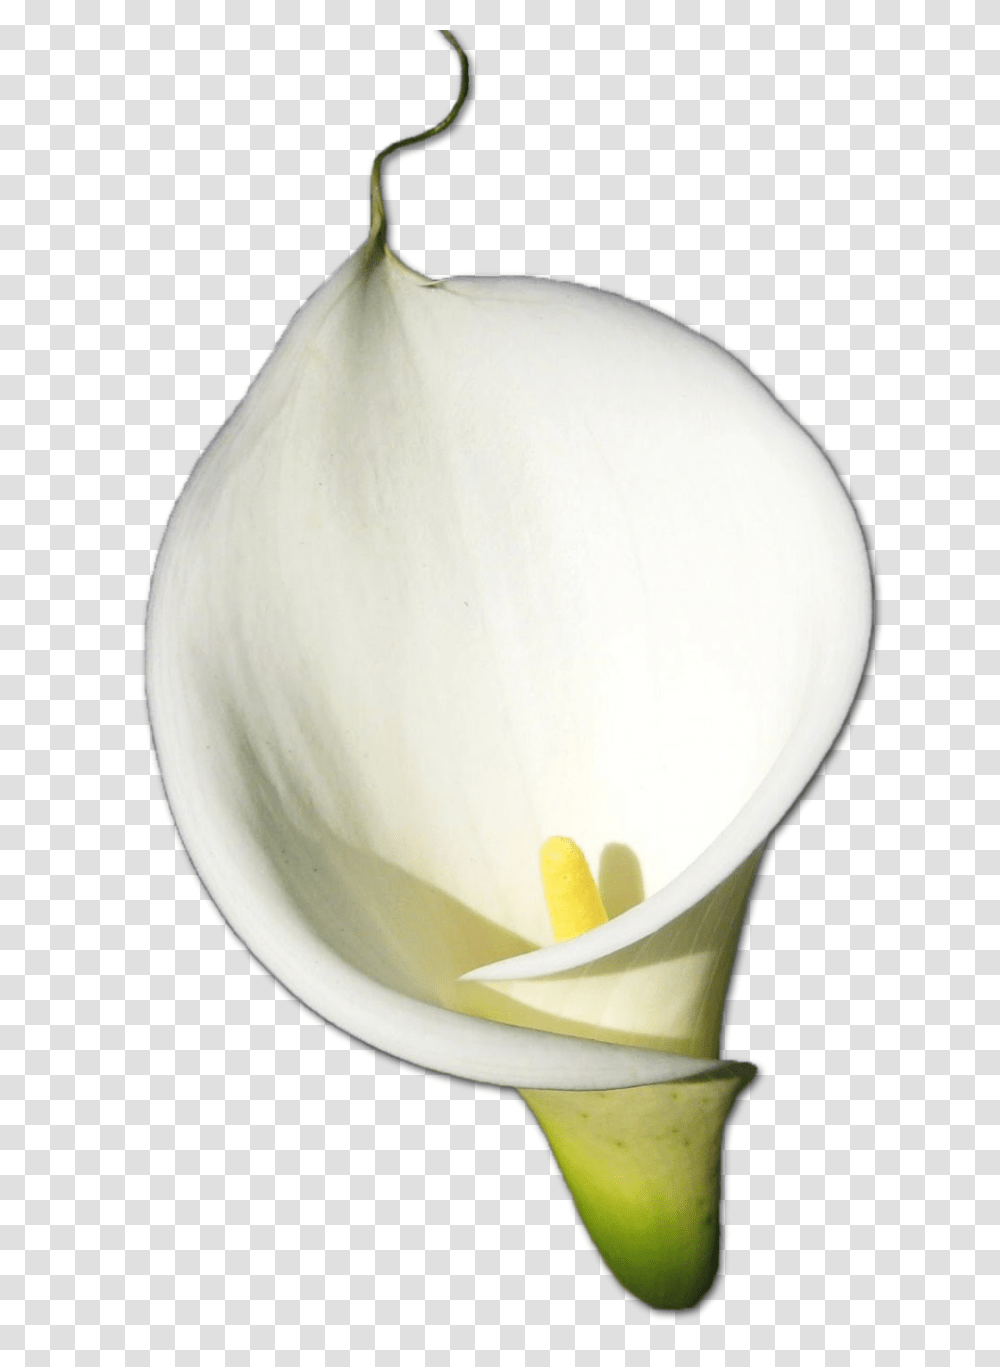 Download Calla Hd Hq Image Freepngimg Calla, Plant, Flower, Blossom, Egg Transparent Png